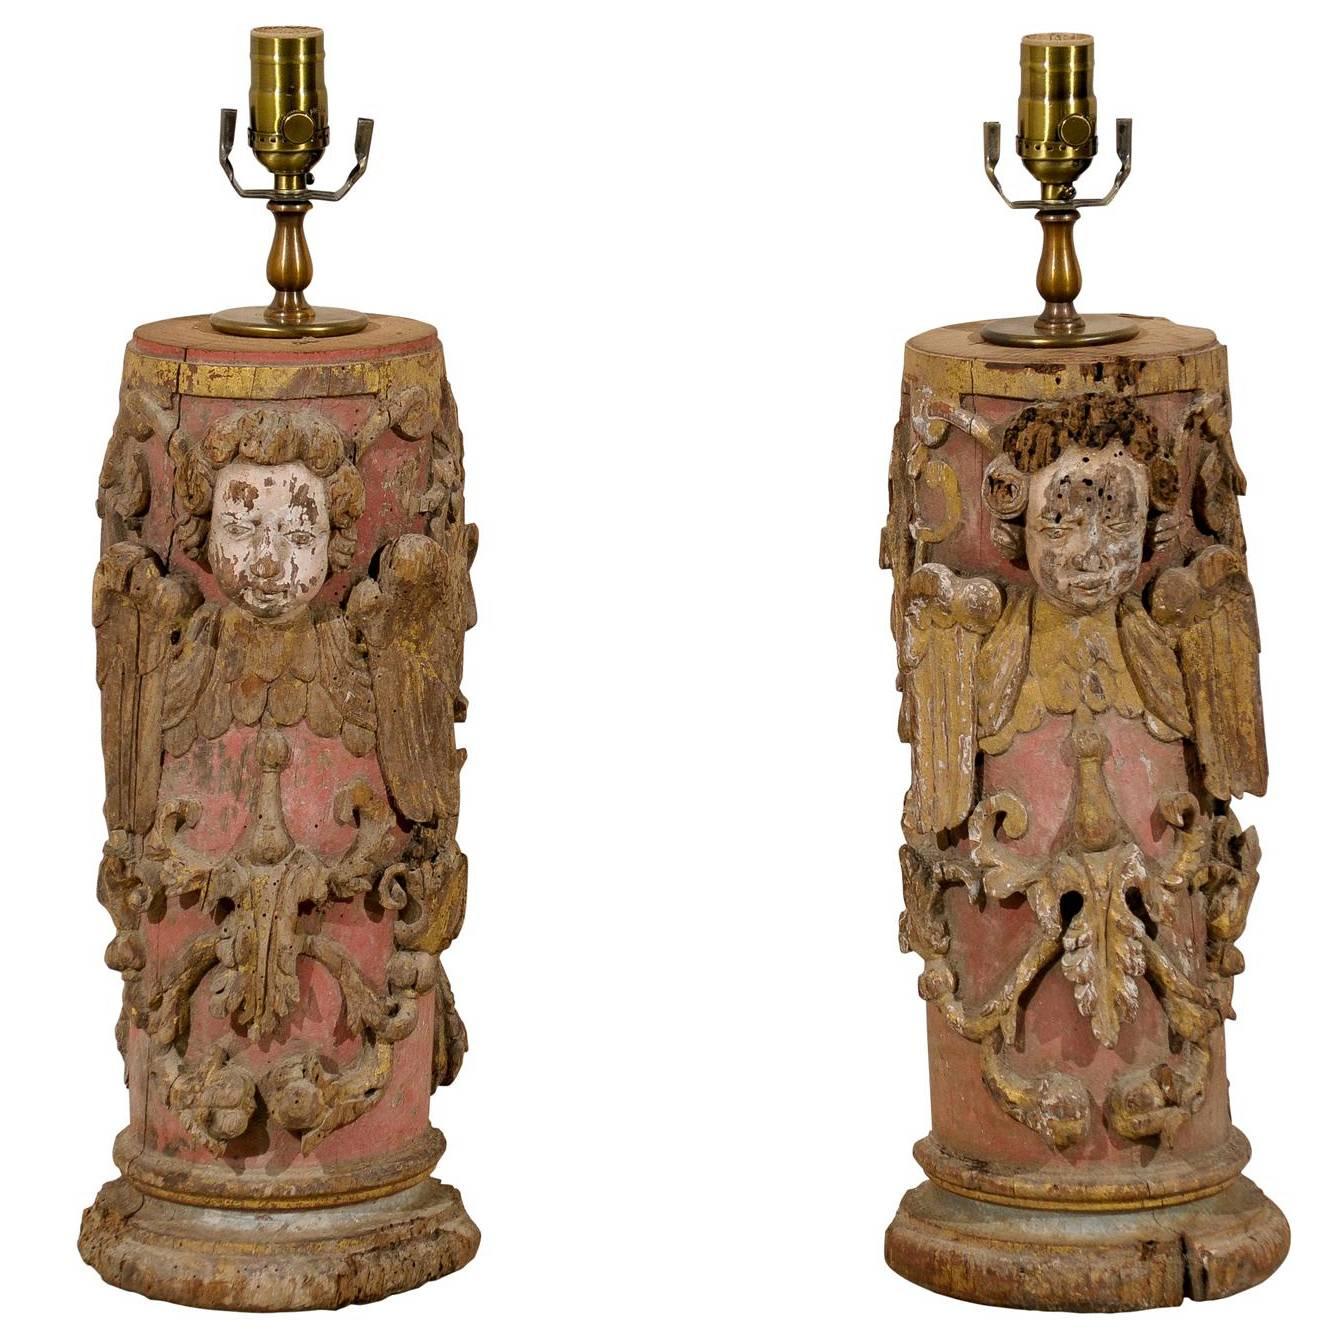 Paar portugiesische Tischlampen aus bemaltem Holz des 18. Jahrhunderts mit Engelsdarstellung